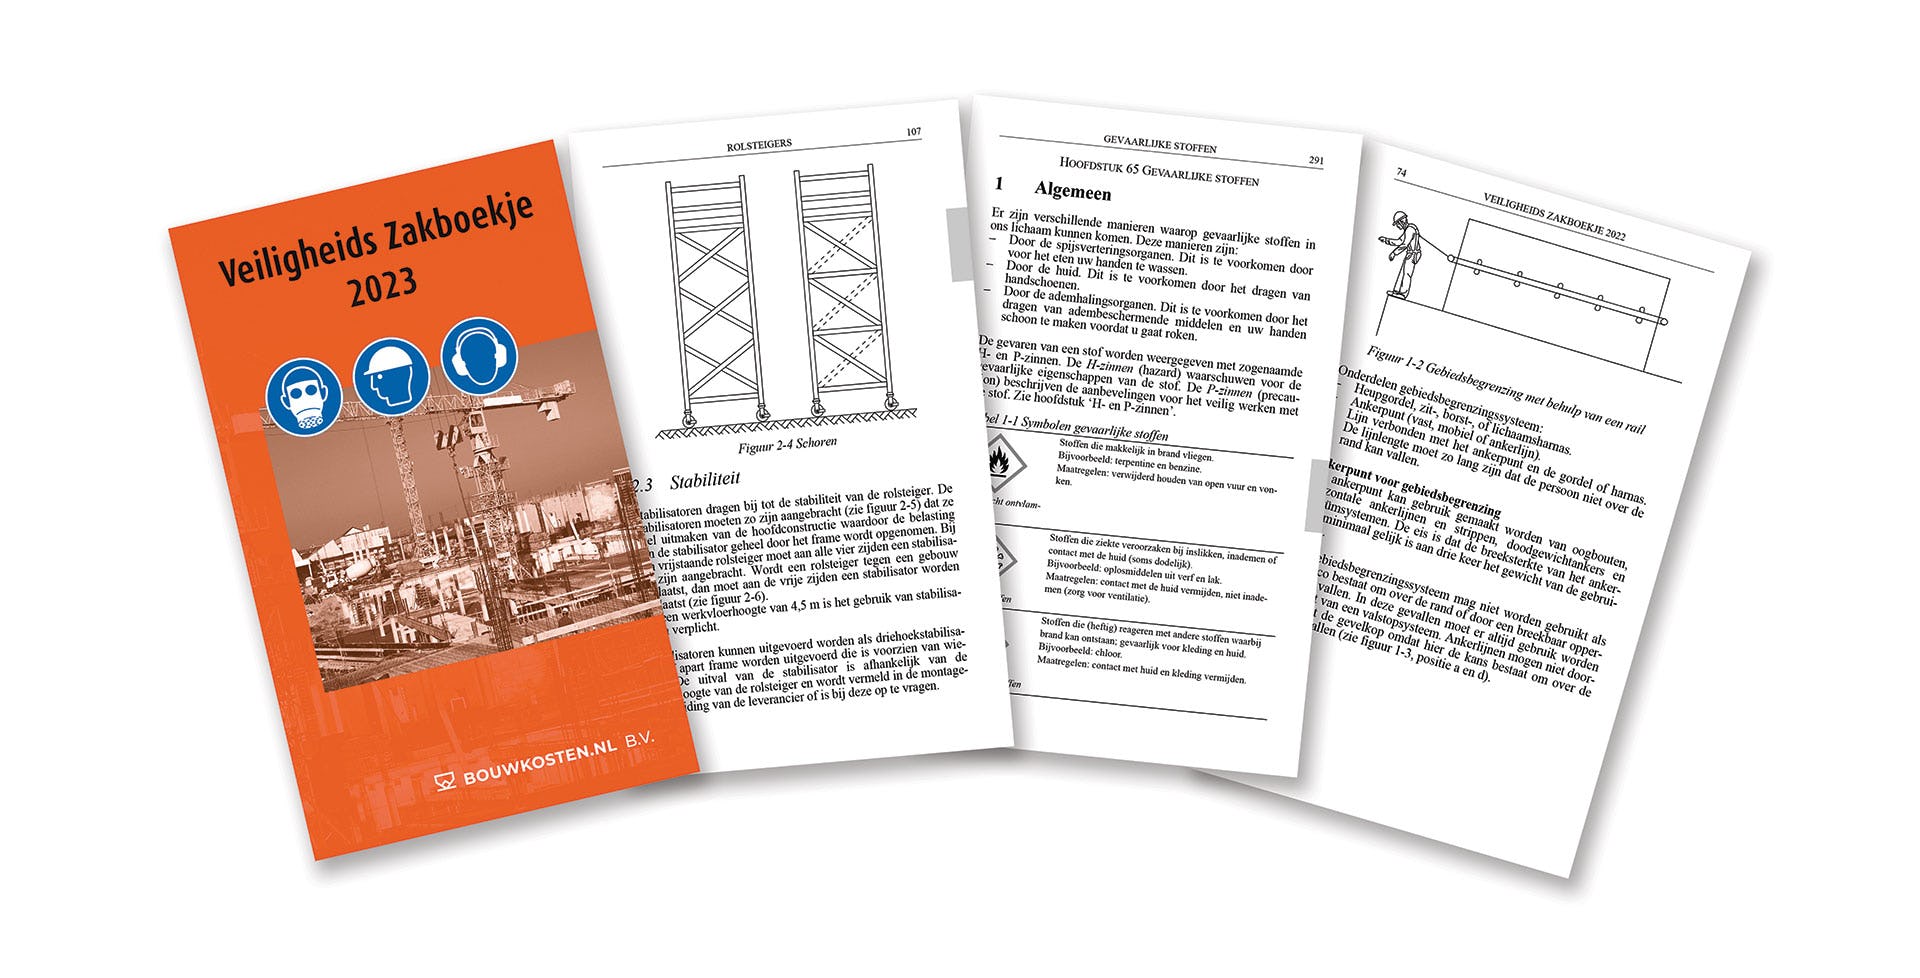 Veiligheidszakboekje: verbeter de veiligheid op de bouwplaats